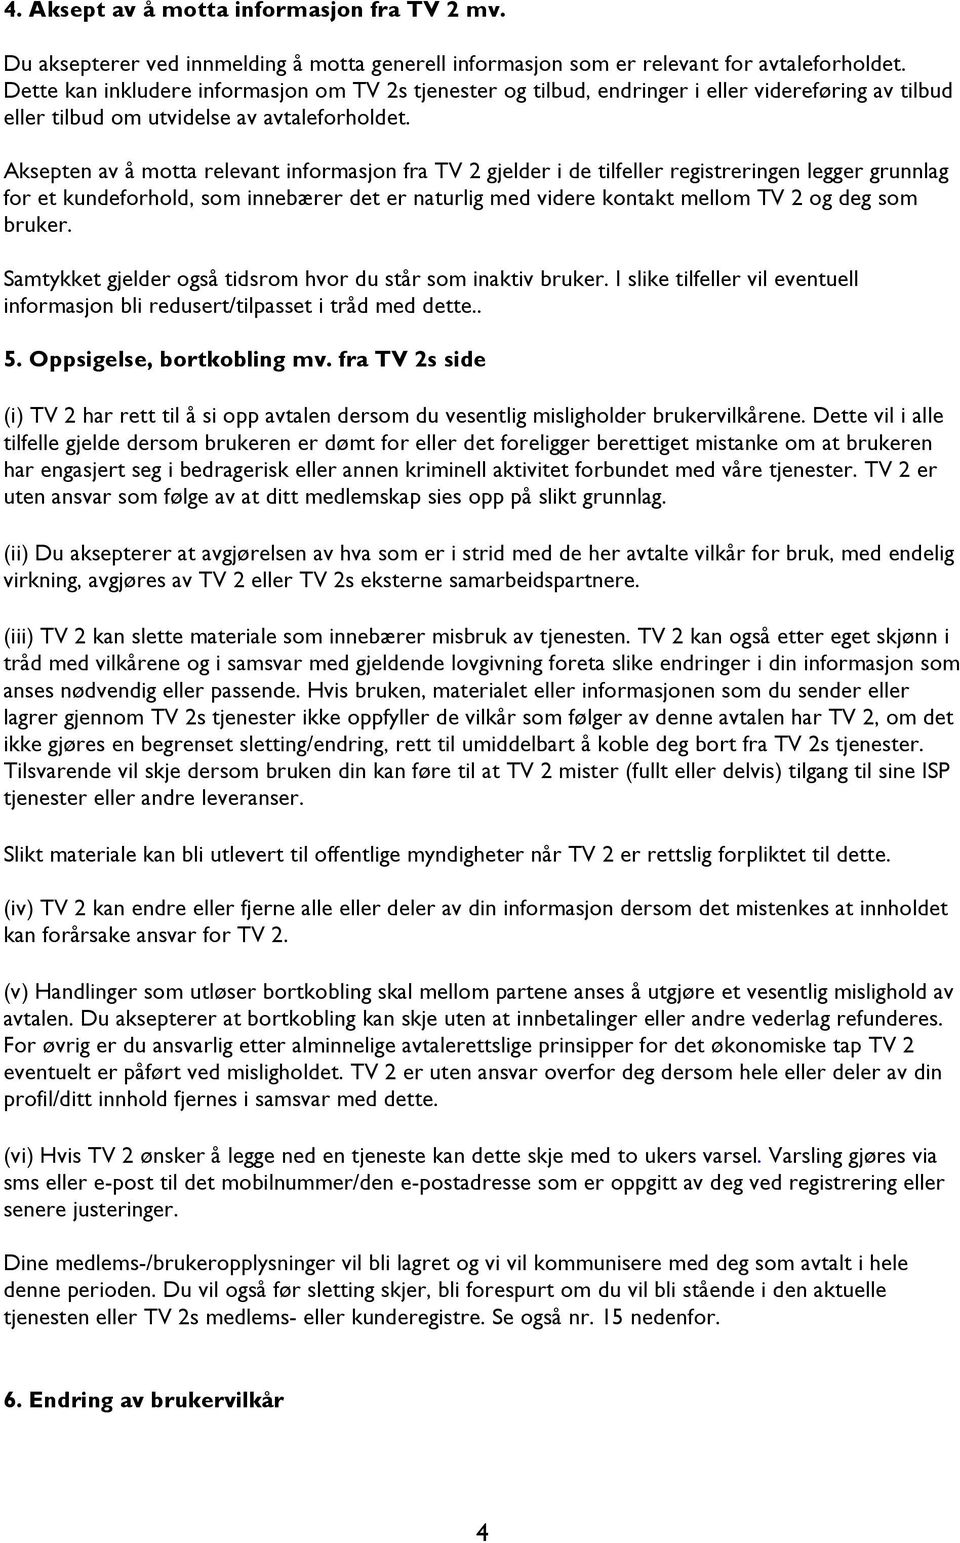 Aksepten av å motta relevant informasjon fra TV 2 gjelder i de tilfeller registreringen legger grunnlag for et kundeforhold, som innebærer det er naturlig med videre kontakt mellom TV 2 og deg som